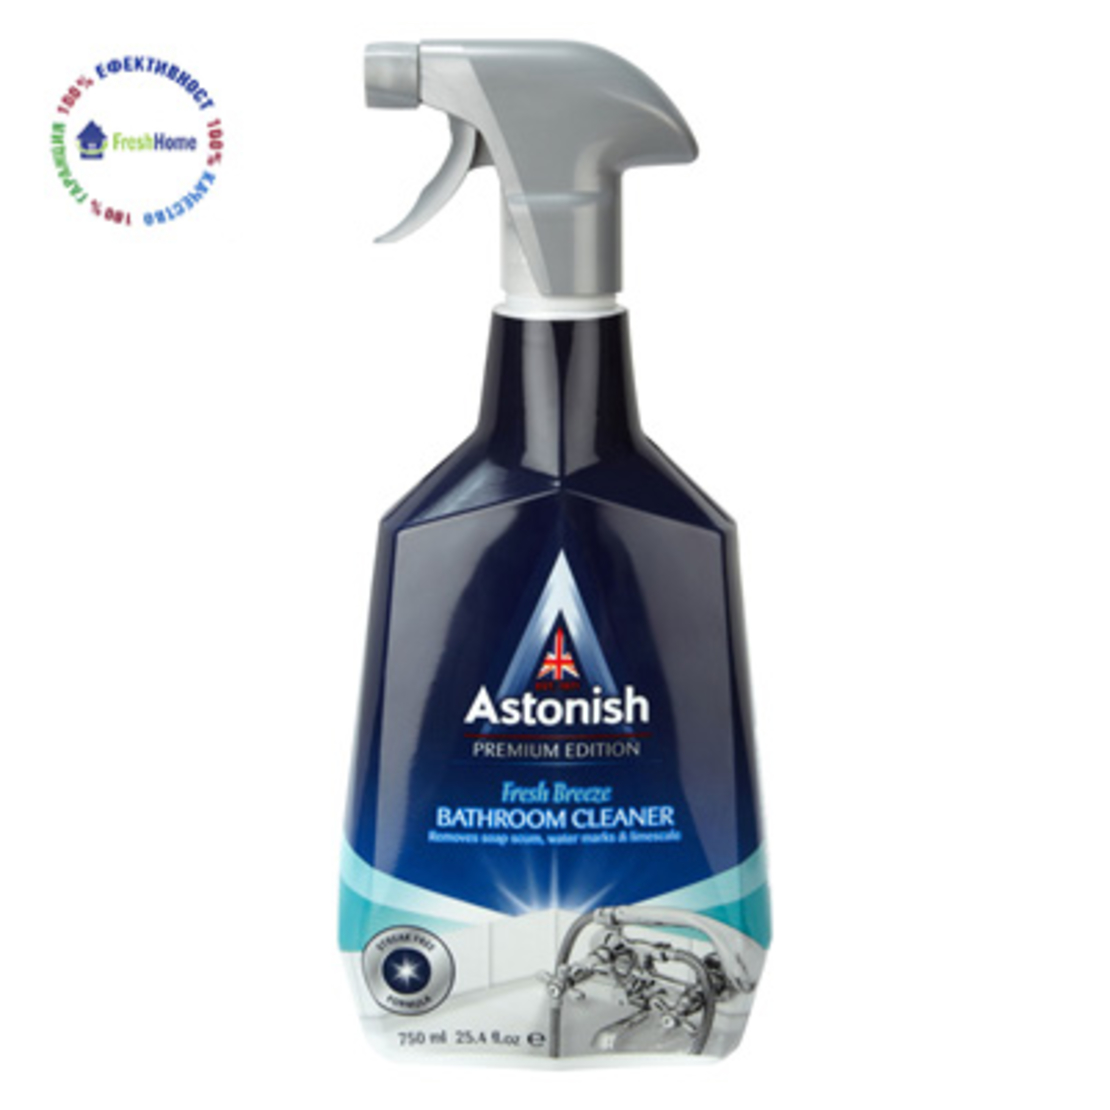 Astonish Premium спрей почистващ препарат за баня 750мл.